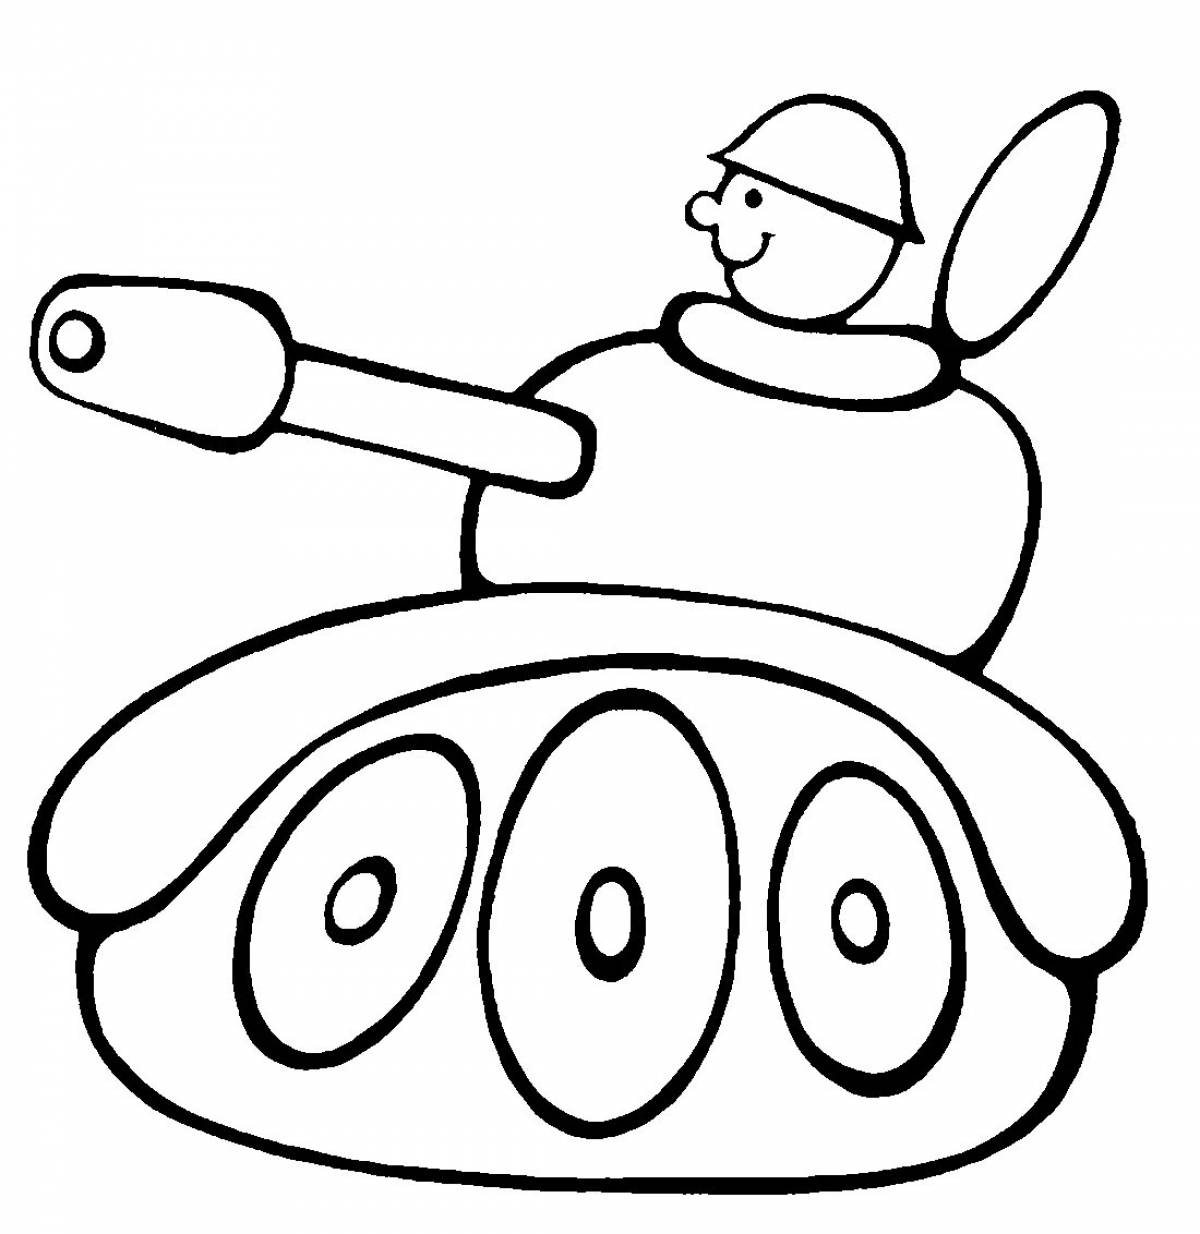 Fun coloring for tanks